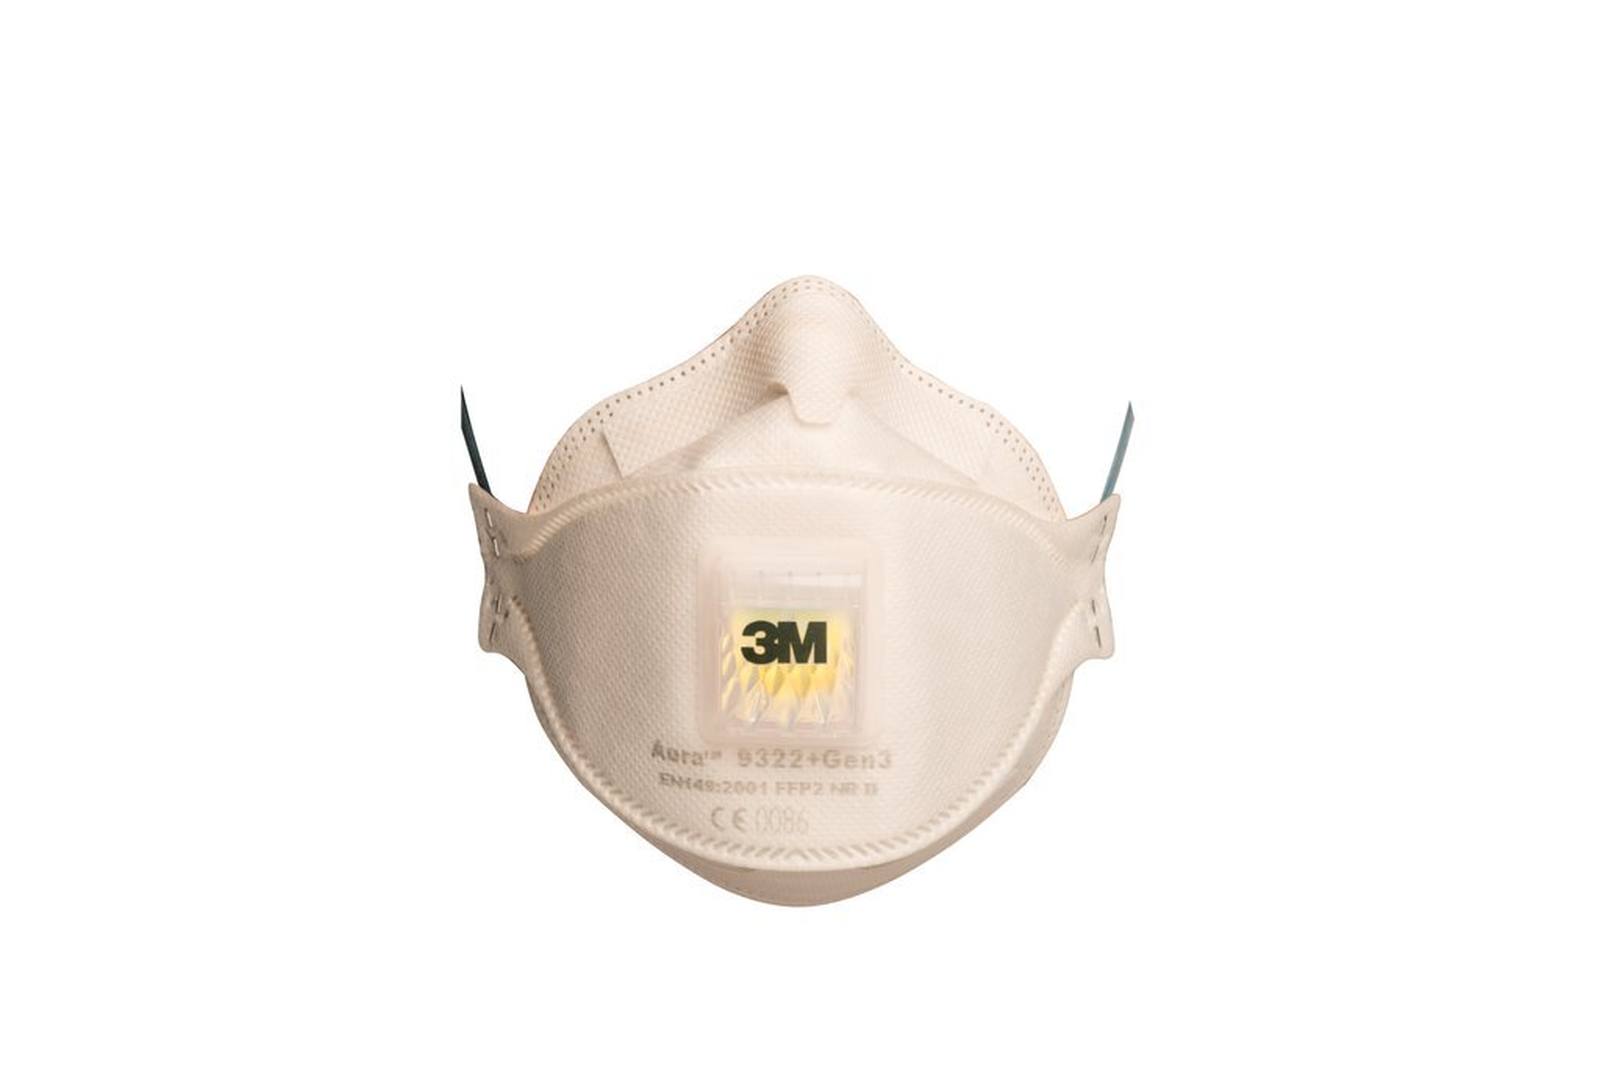 3M 9322+ Gen3 SV Aura Masque respiratoire FFP2 avec valve d'expiration Cool-Flow, jusqu'à 10 fois la valeur limite (emballage individuel hygiénique), petit paquet